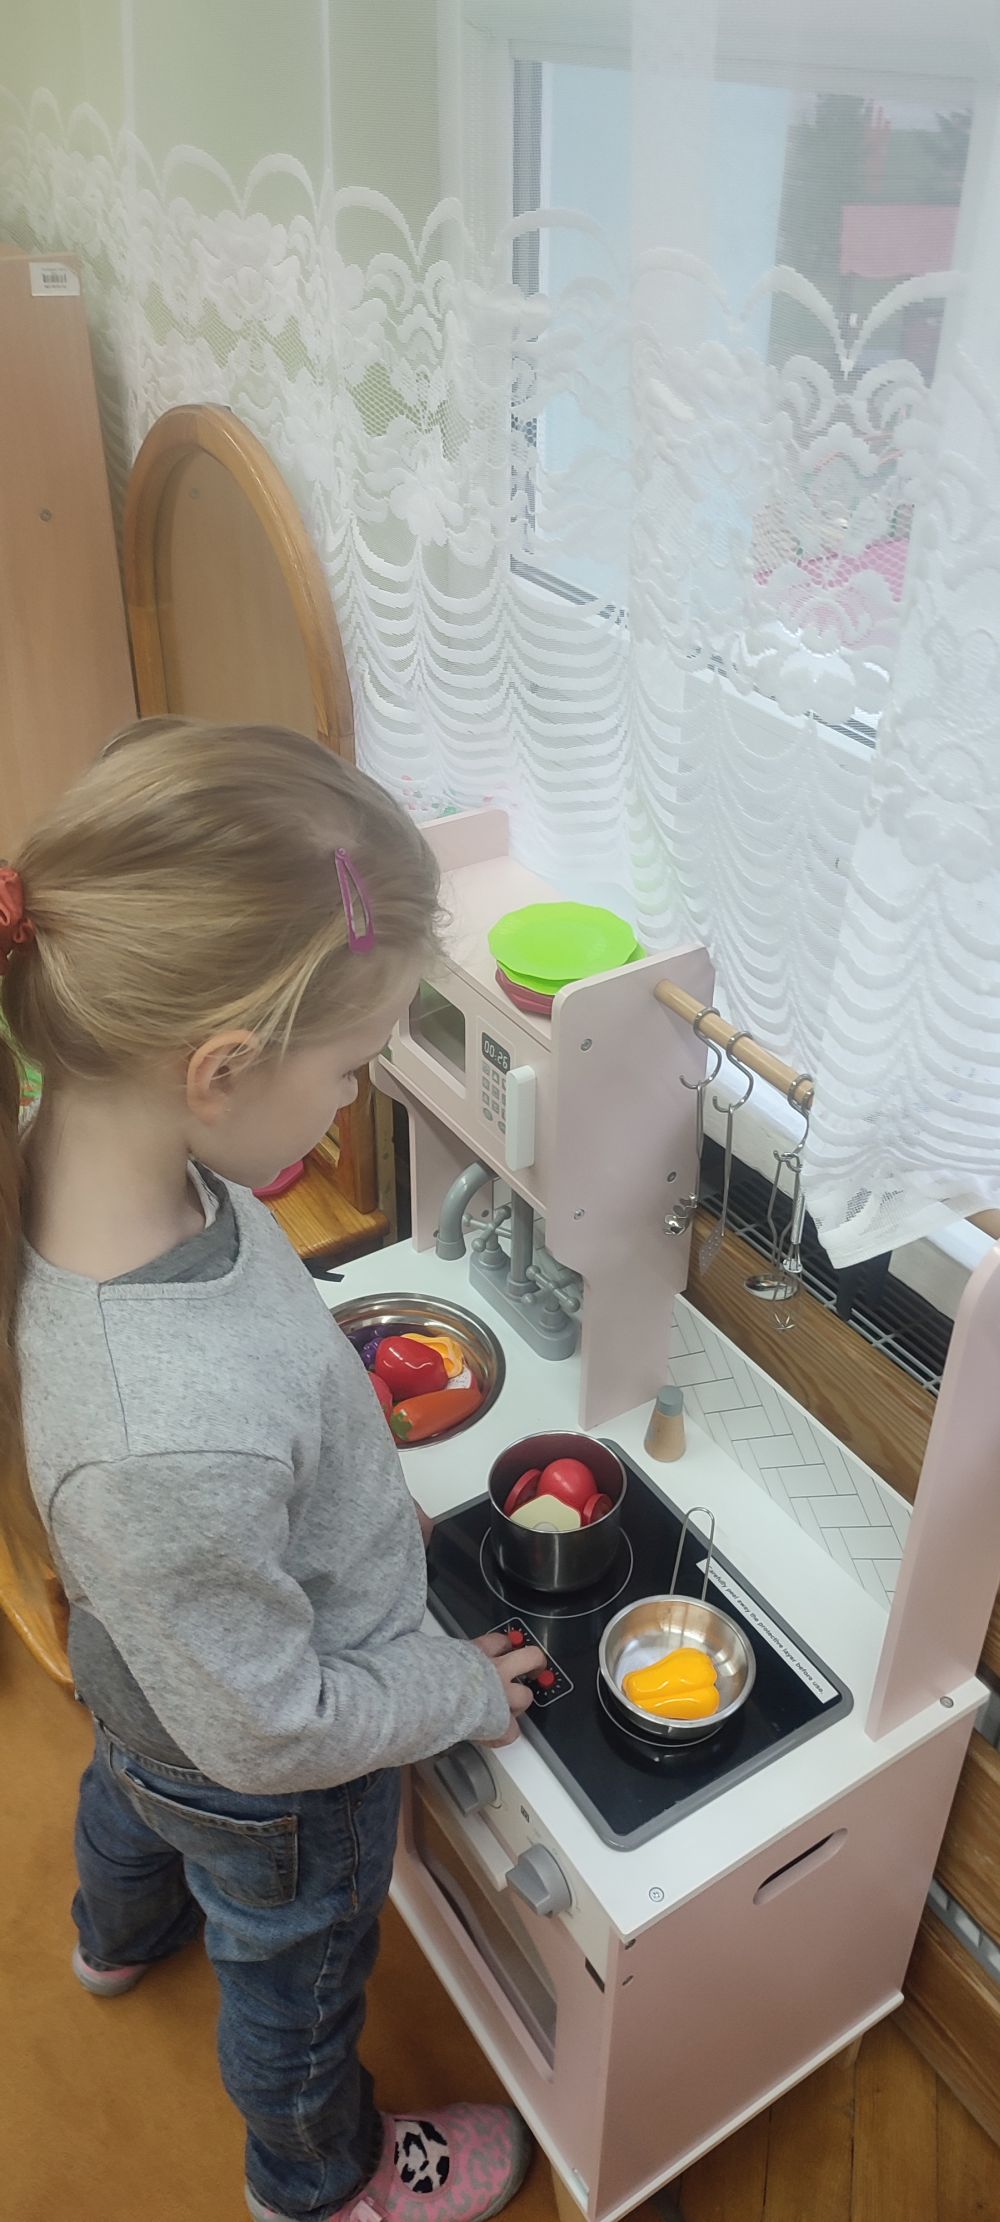 Dziewczynka bawi się w kąciku kucharskim